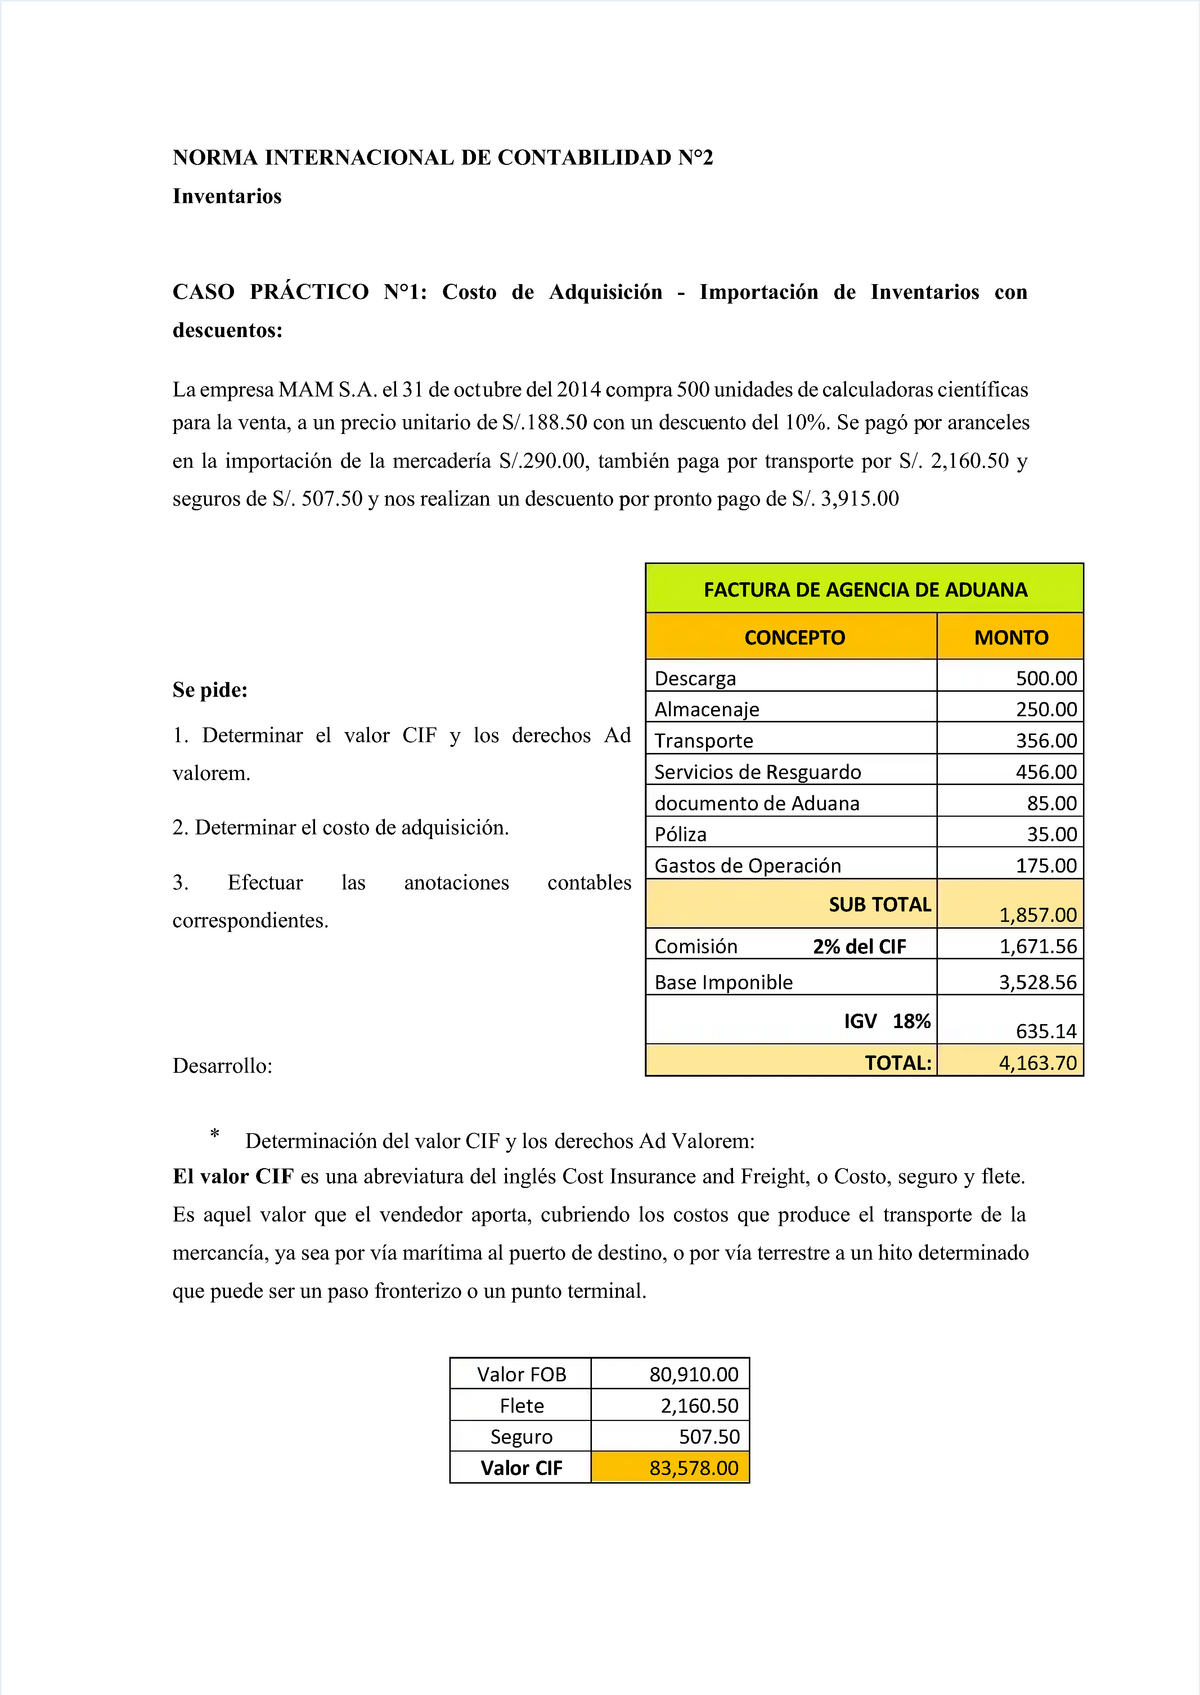 Pdf Nic 2 Compress Casos Practicos De La Nic 2 Norma Internacional De Contabilidad N°2norma 9491